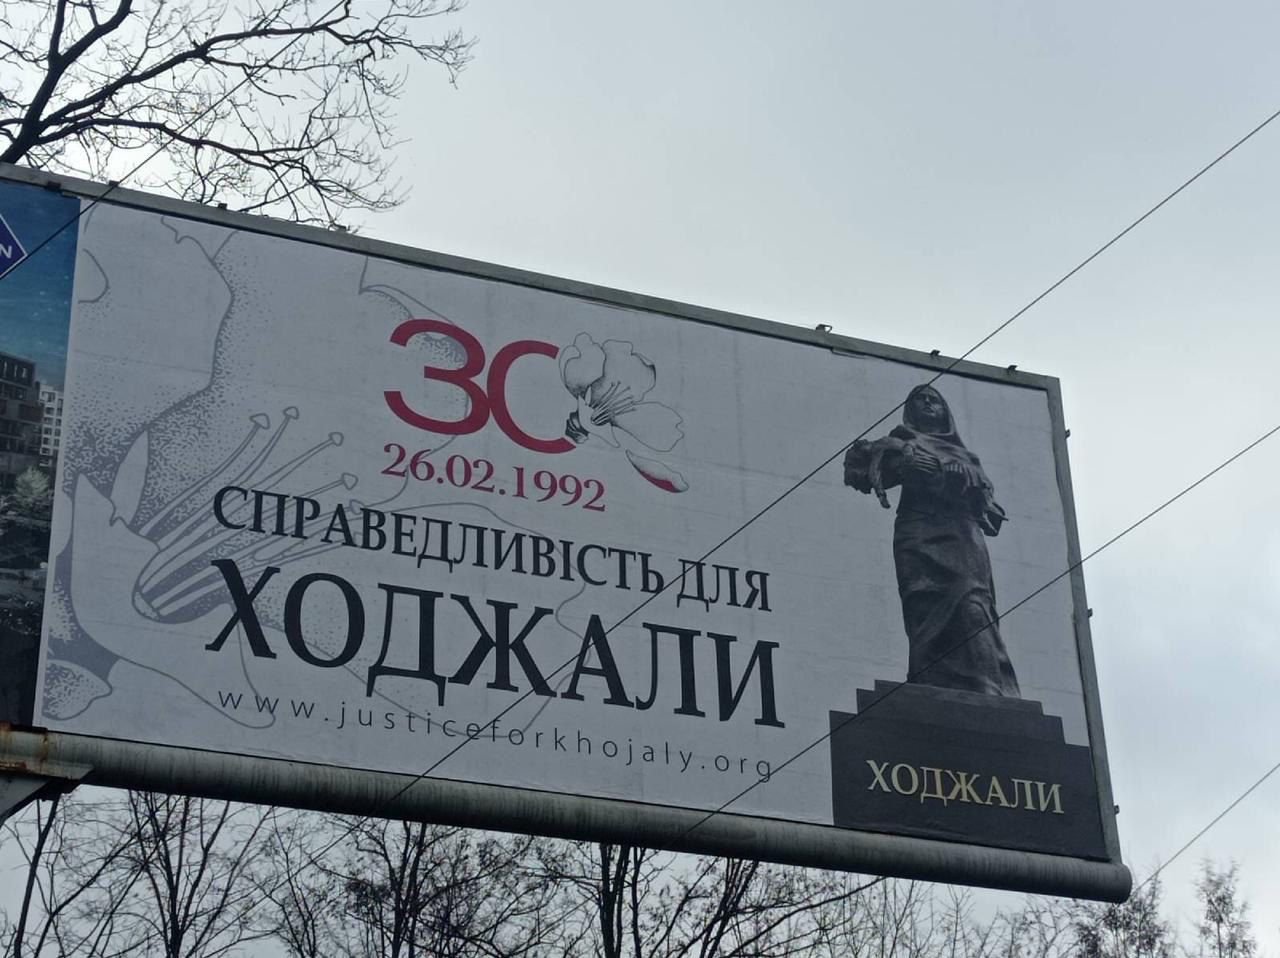 UAR Kiyevin mərkəzi küçələrində Xocalı soyqırımından bəhs edən reklam lövhələri quraşdırıb